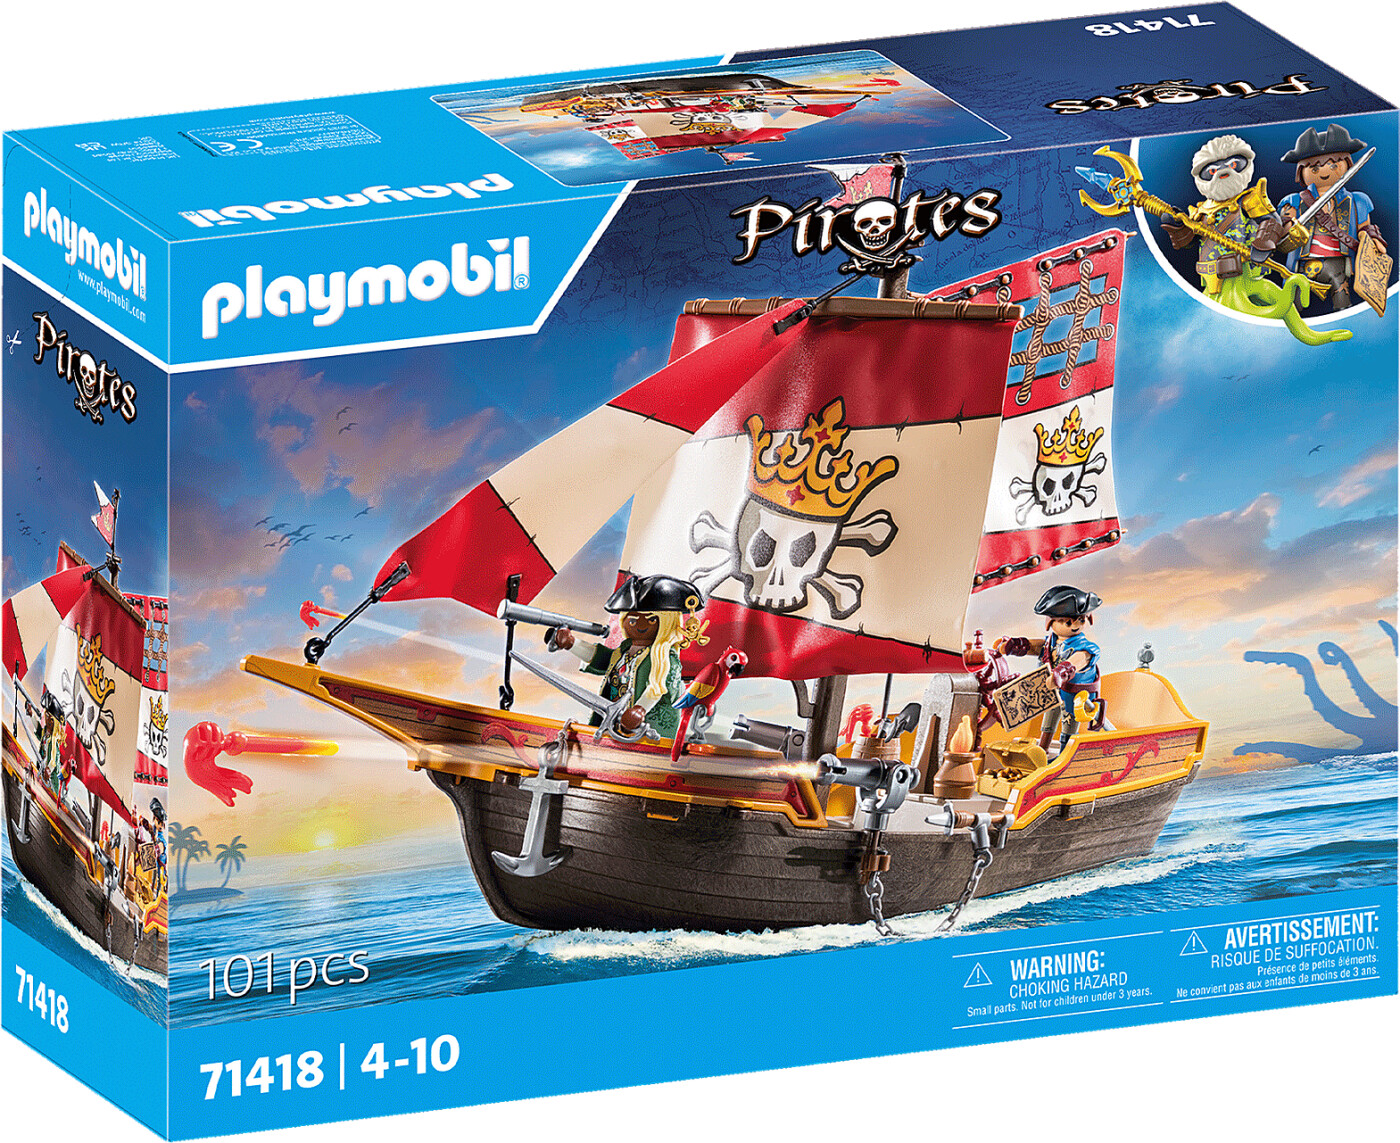 Billede af Playmobil Pirates - Piratskib - 71418 hos Gucca.dk